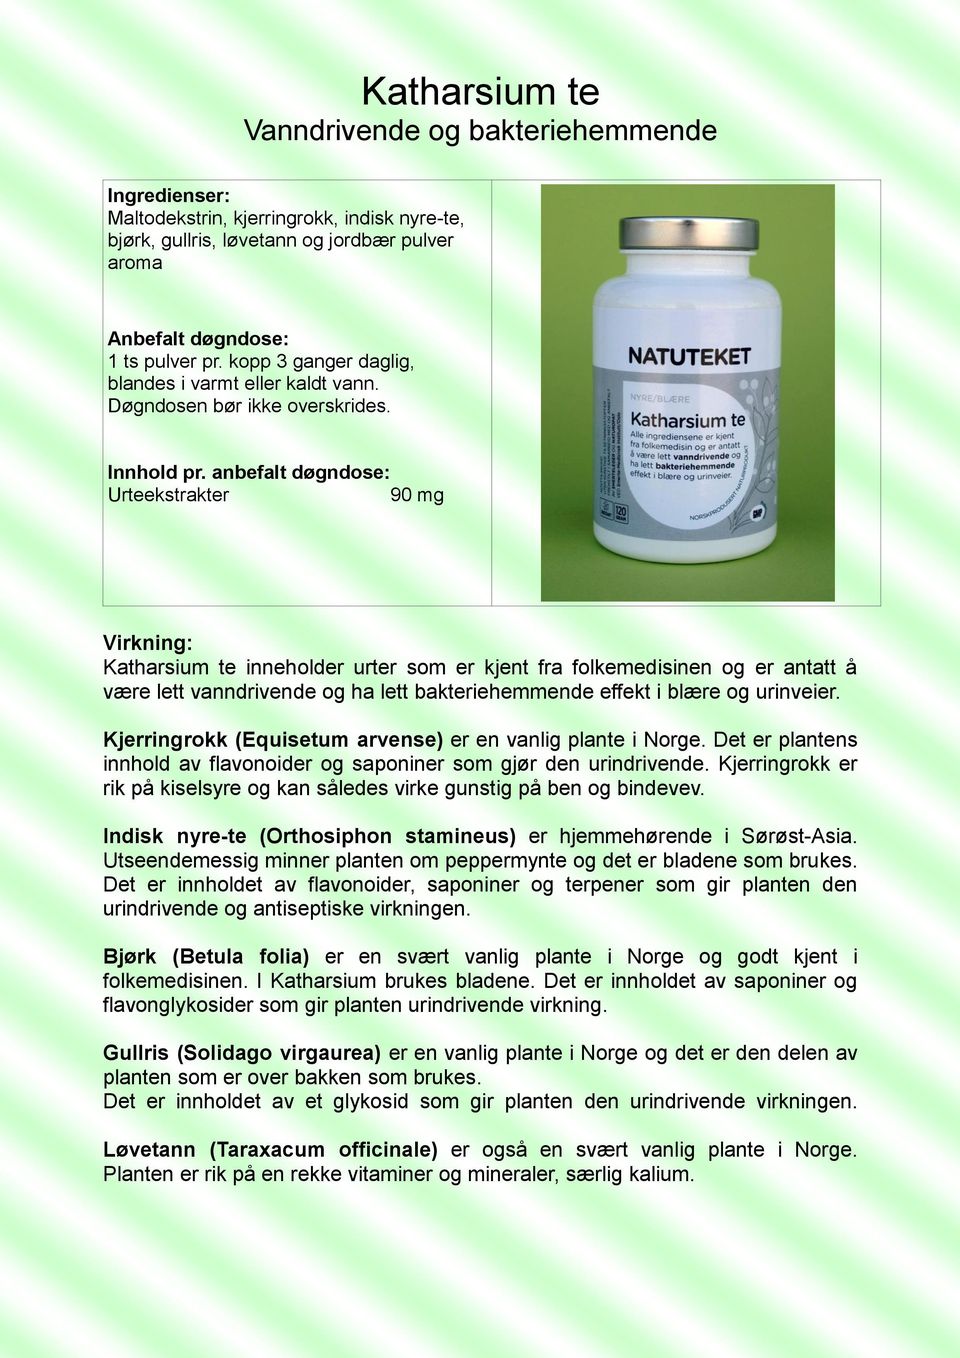 anbefalt døgndose: Urteekstrakter 90 mg Katharsium te inneholder urter som er kjent fra folkemedisinen og er antatt å være lett vanndrivende og ha lett bakteriehemmende effekt i blære og urinveier.